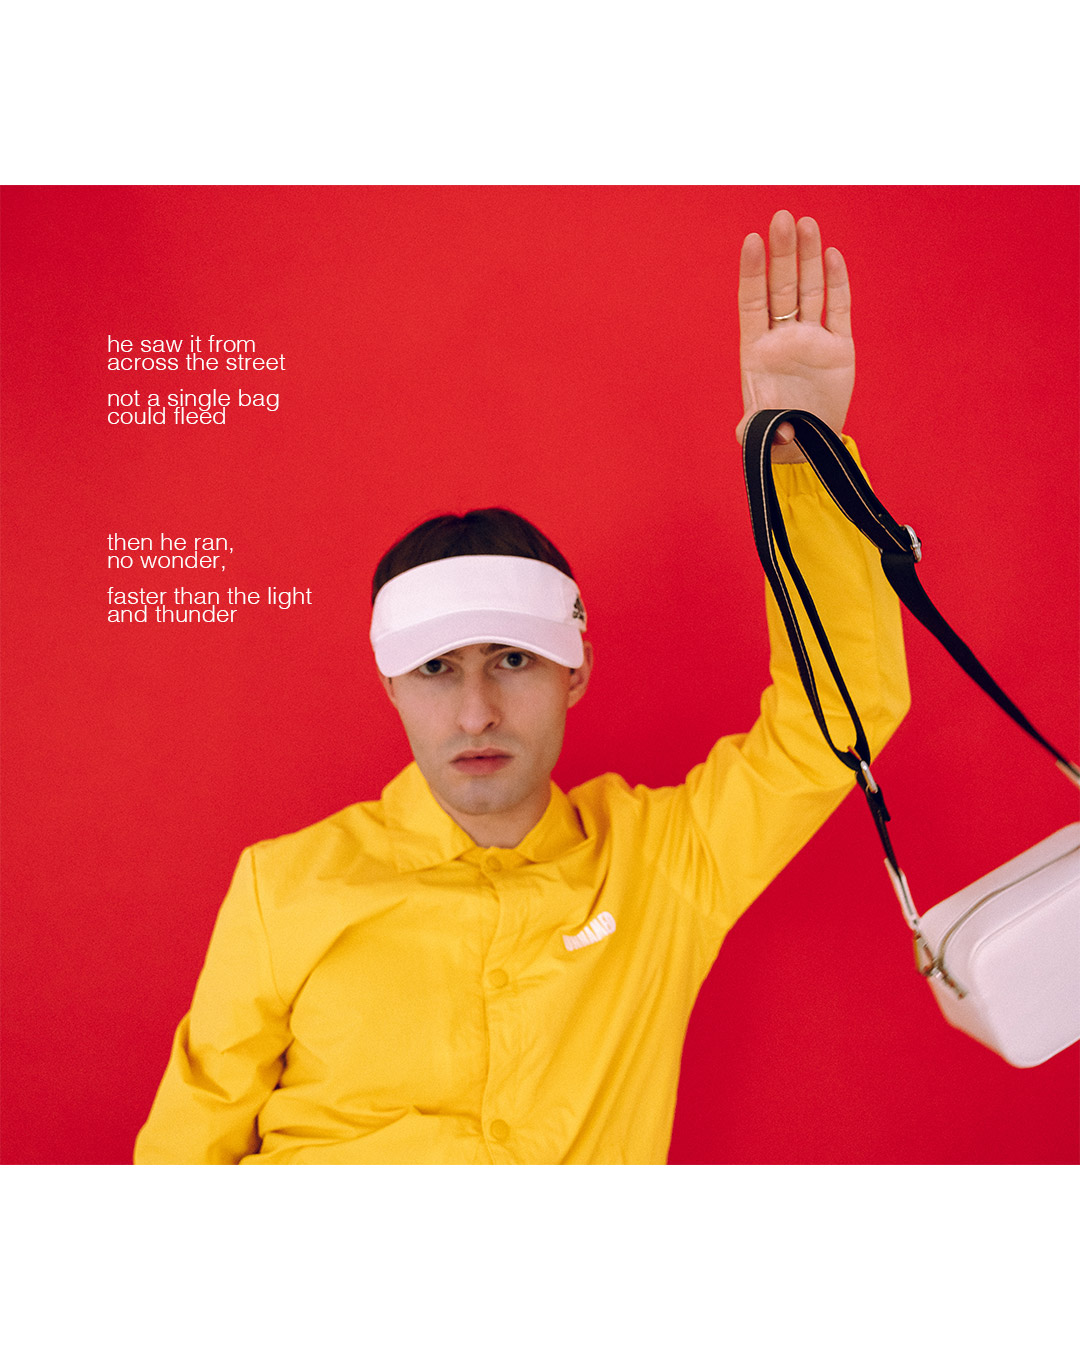 Weiße Handtasche für Männer in einem Fashion Editorial fotografiert.